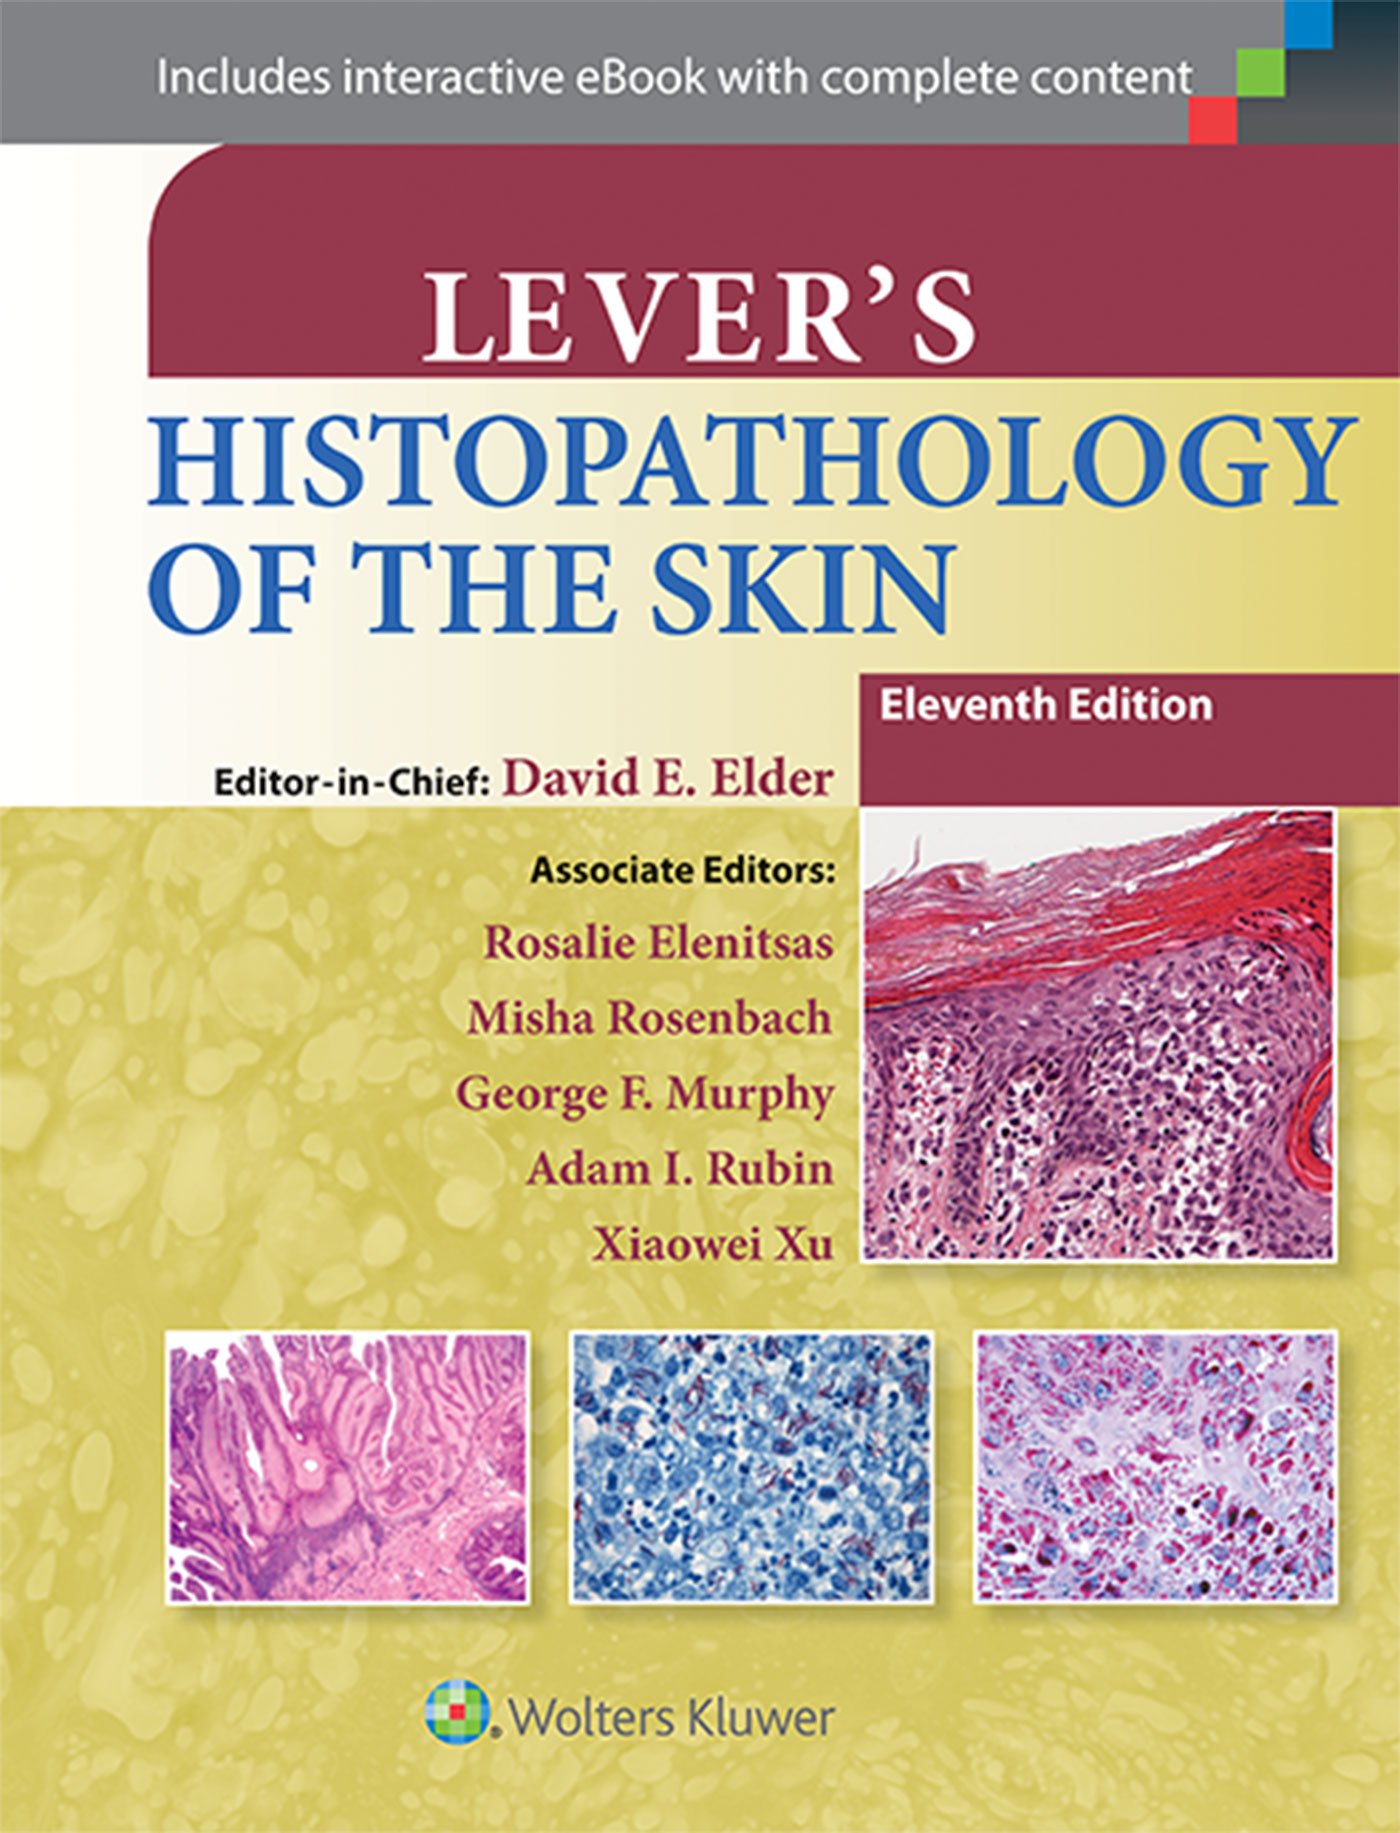 Libri David E. Elder - Lever's Histopathology of the Skin NUOVO SIGILLATO, EDIZIONE DEL 01/11/2014 SUBITO DISPONIBILE